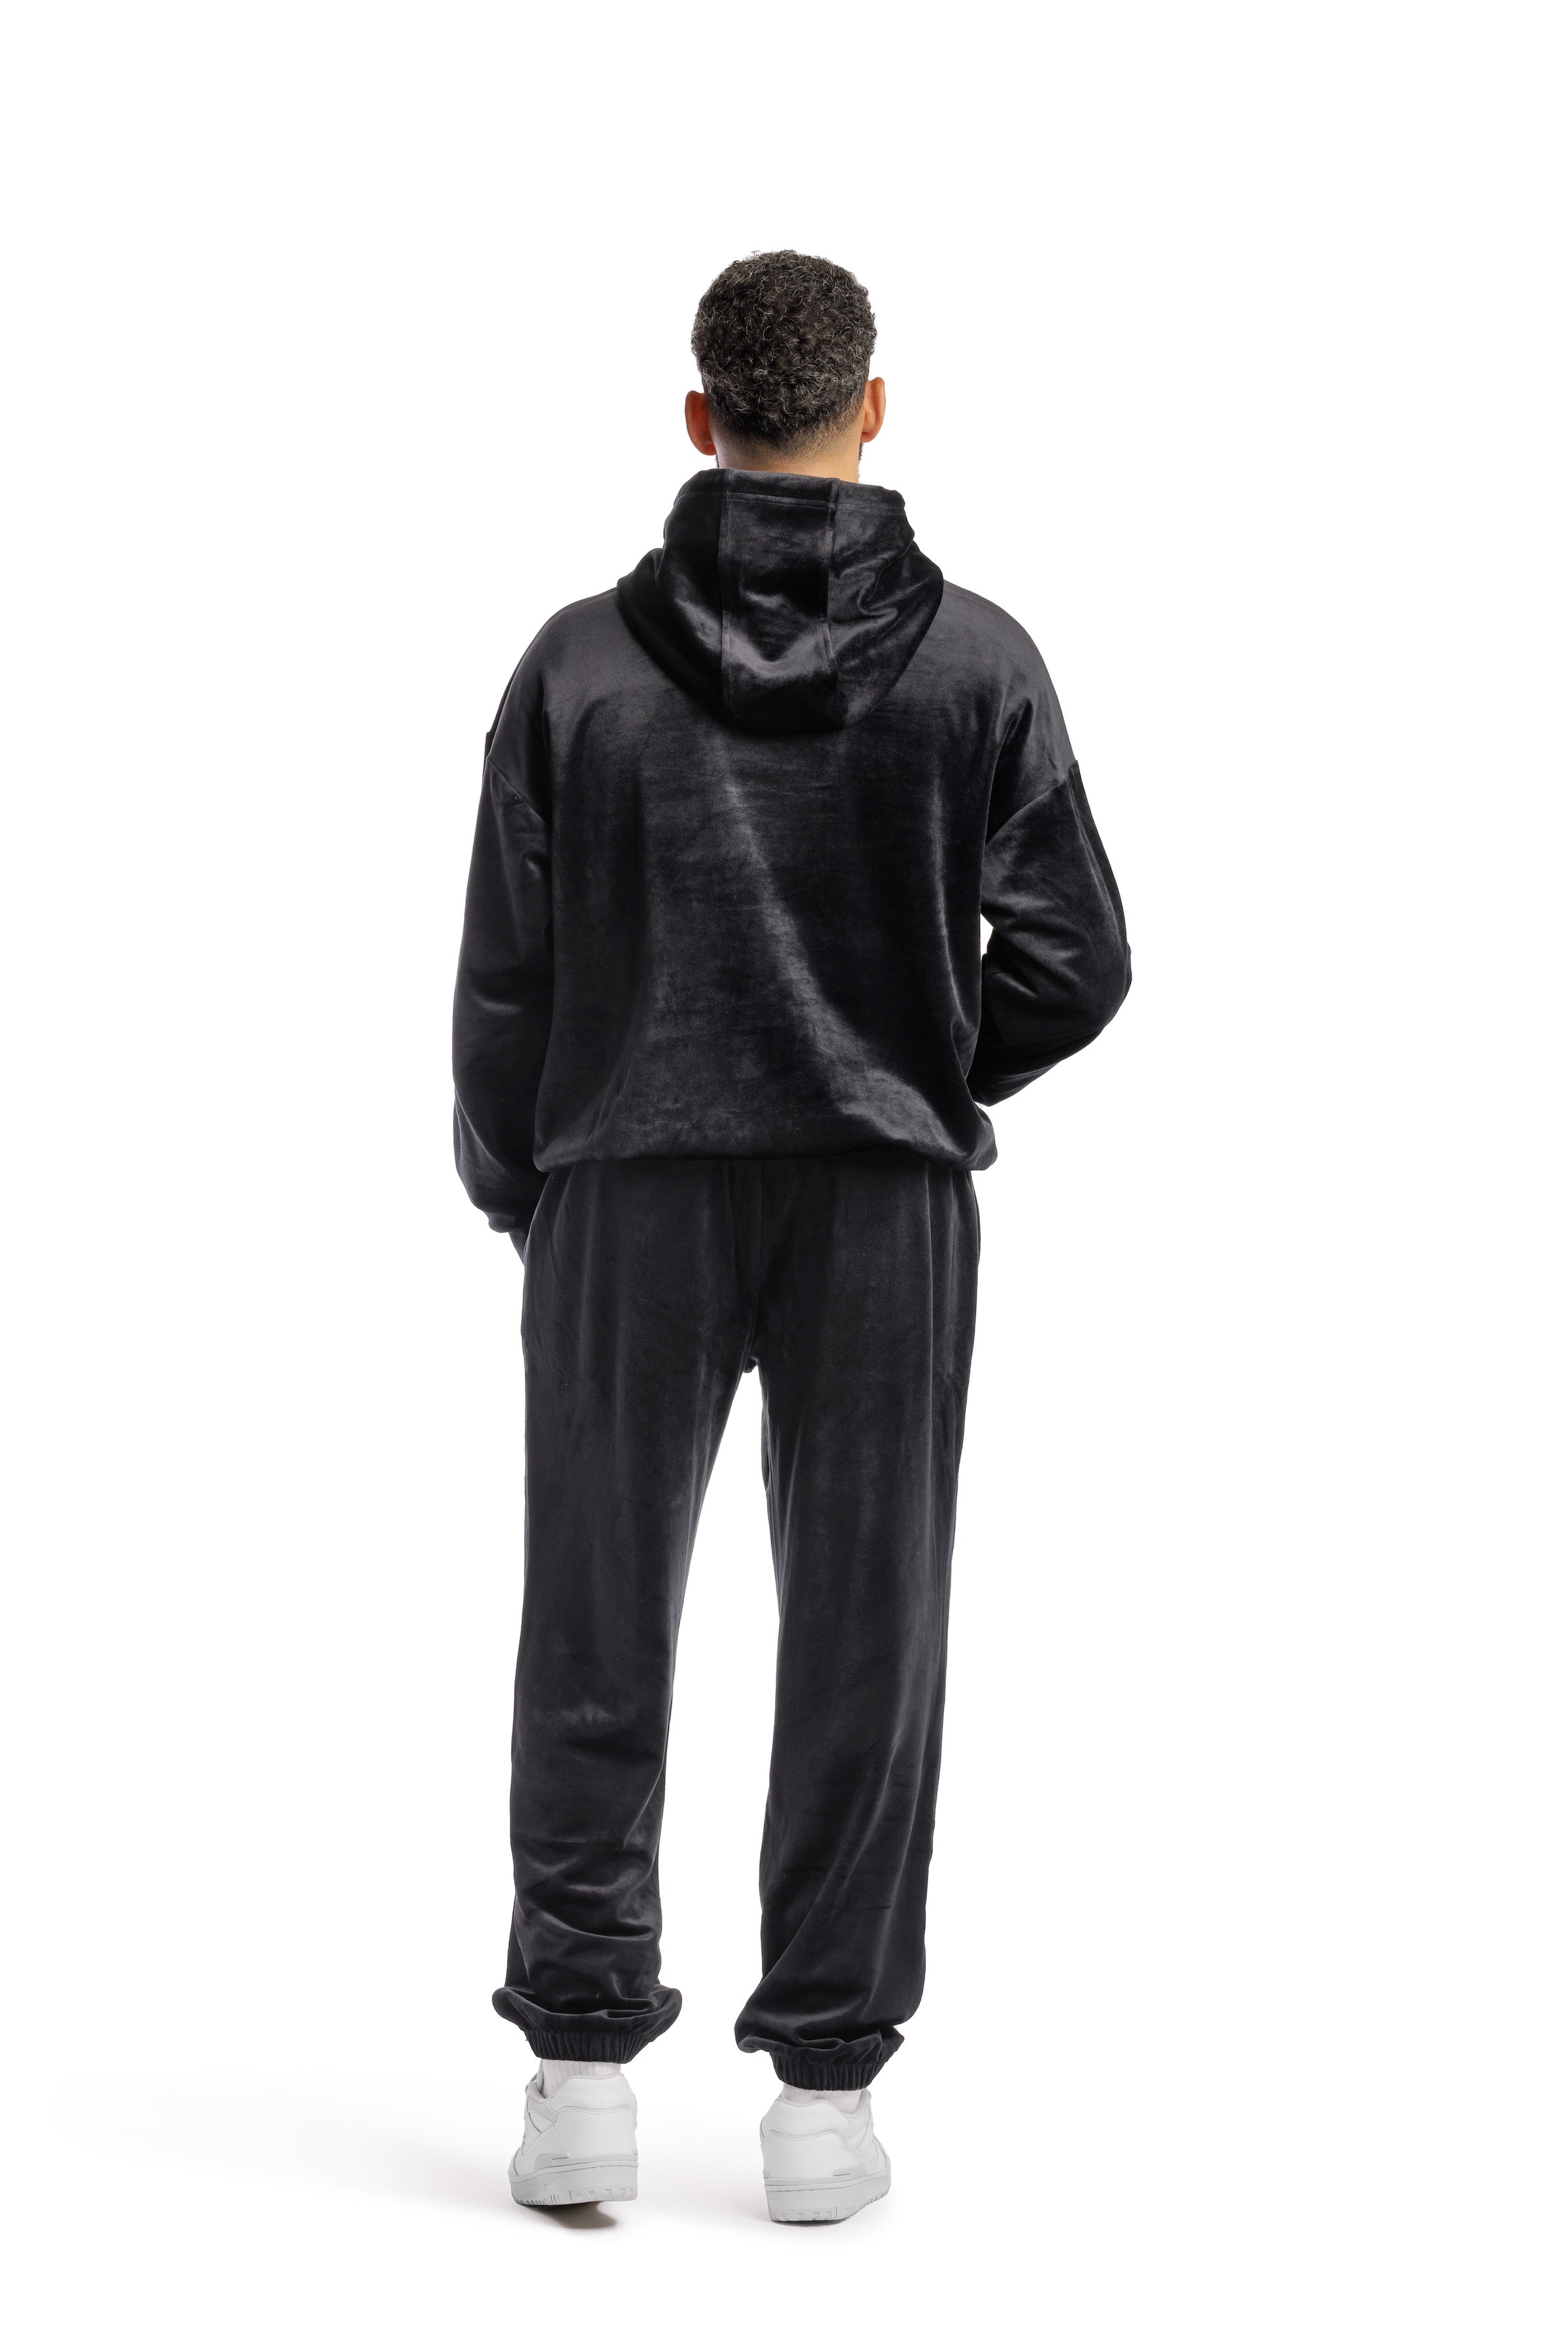 Men’s double-face velour sweatsuit set in black